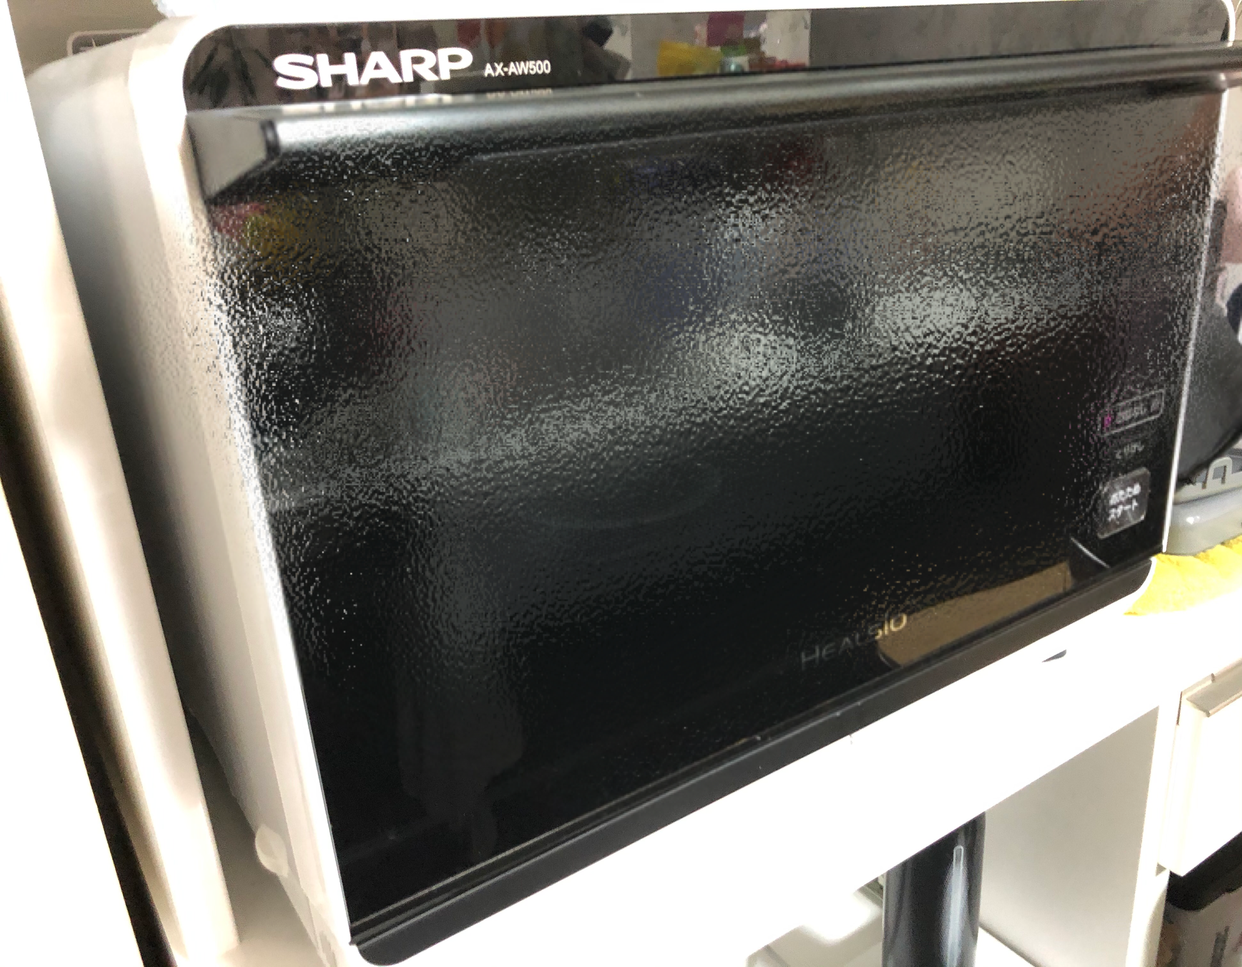 SHARP(シャープ) ウォーターオーブン ヘルシオ AX-AW500を使ったみこしばさんのクチコミ画像1